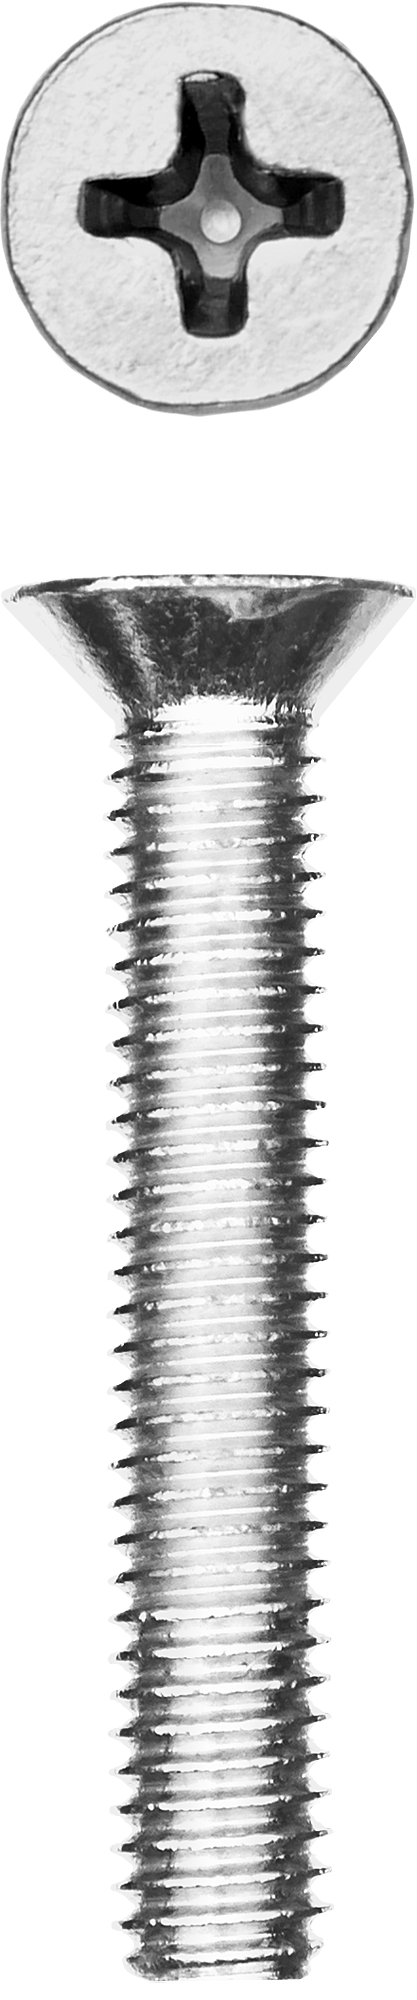 Винт с потайной головкой Зубр 303116-05-030, М5, 3 см, 965 DIN, 5 мм, оцинкованная сталь, 8 шт., фасовка (303116-05-030)